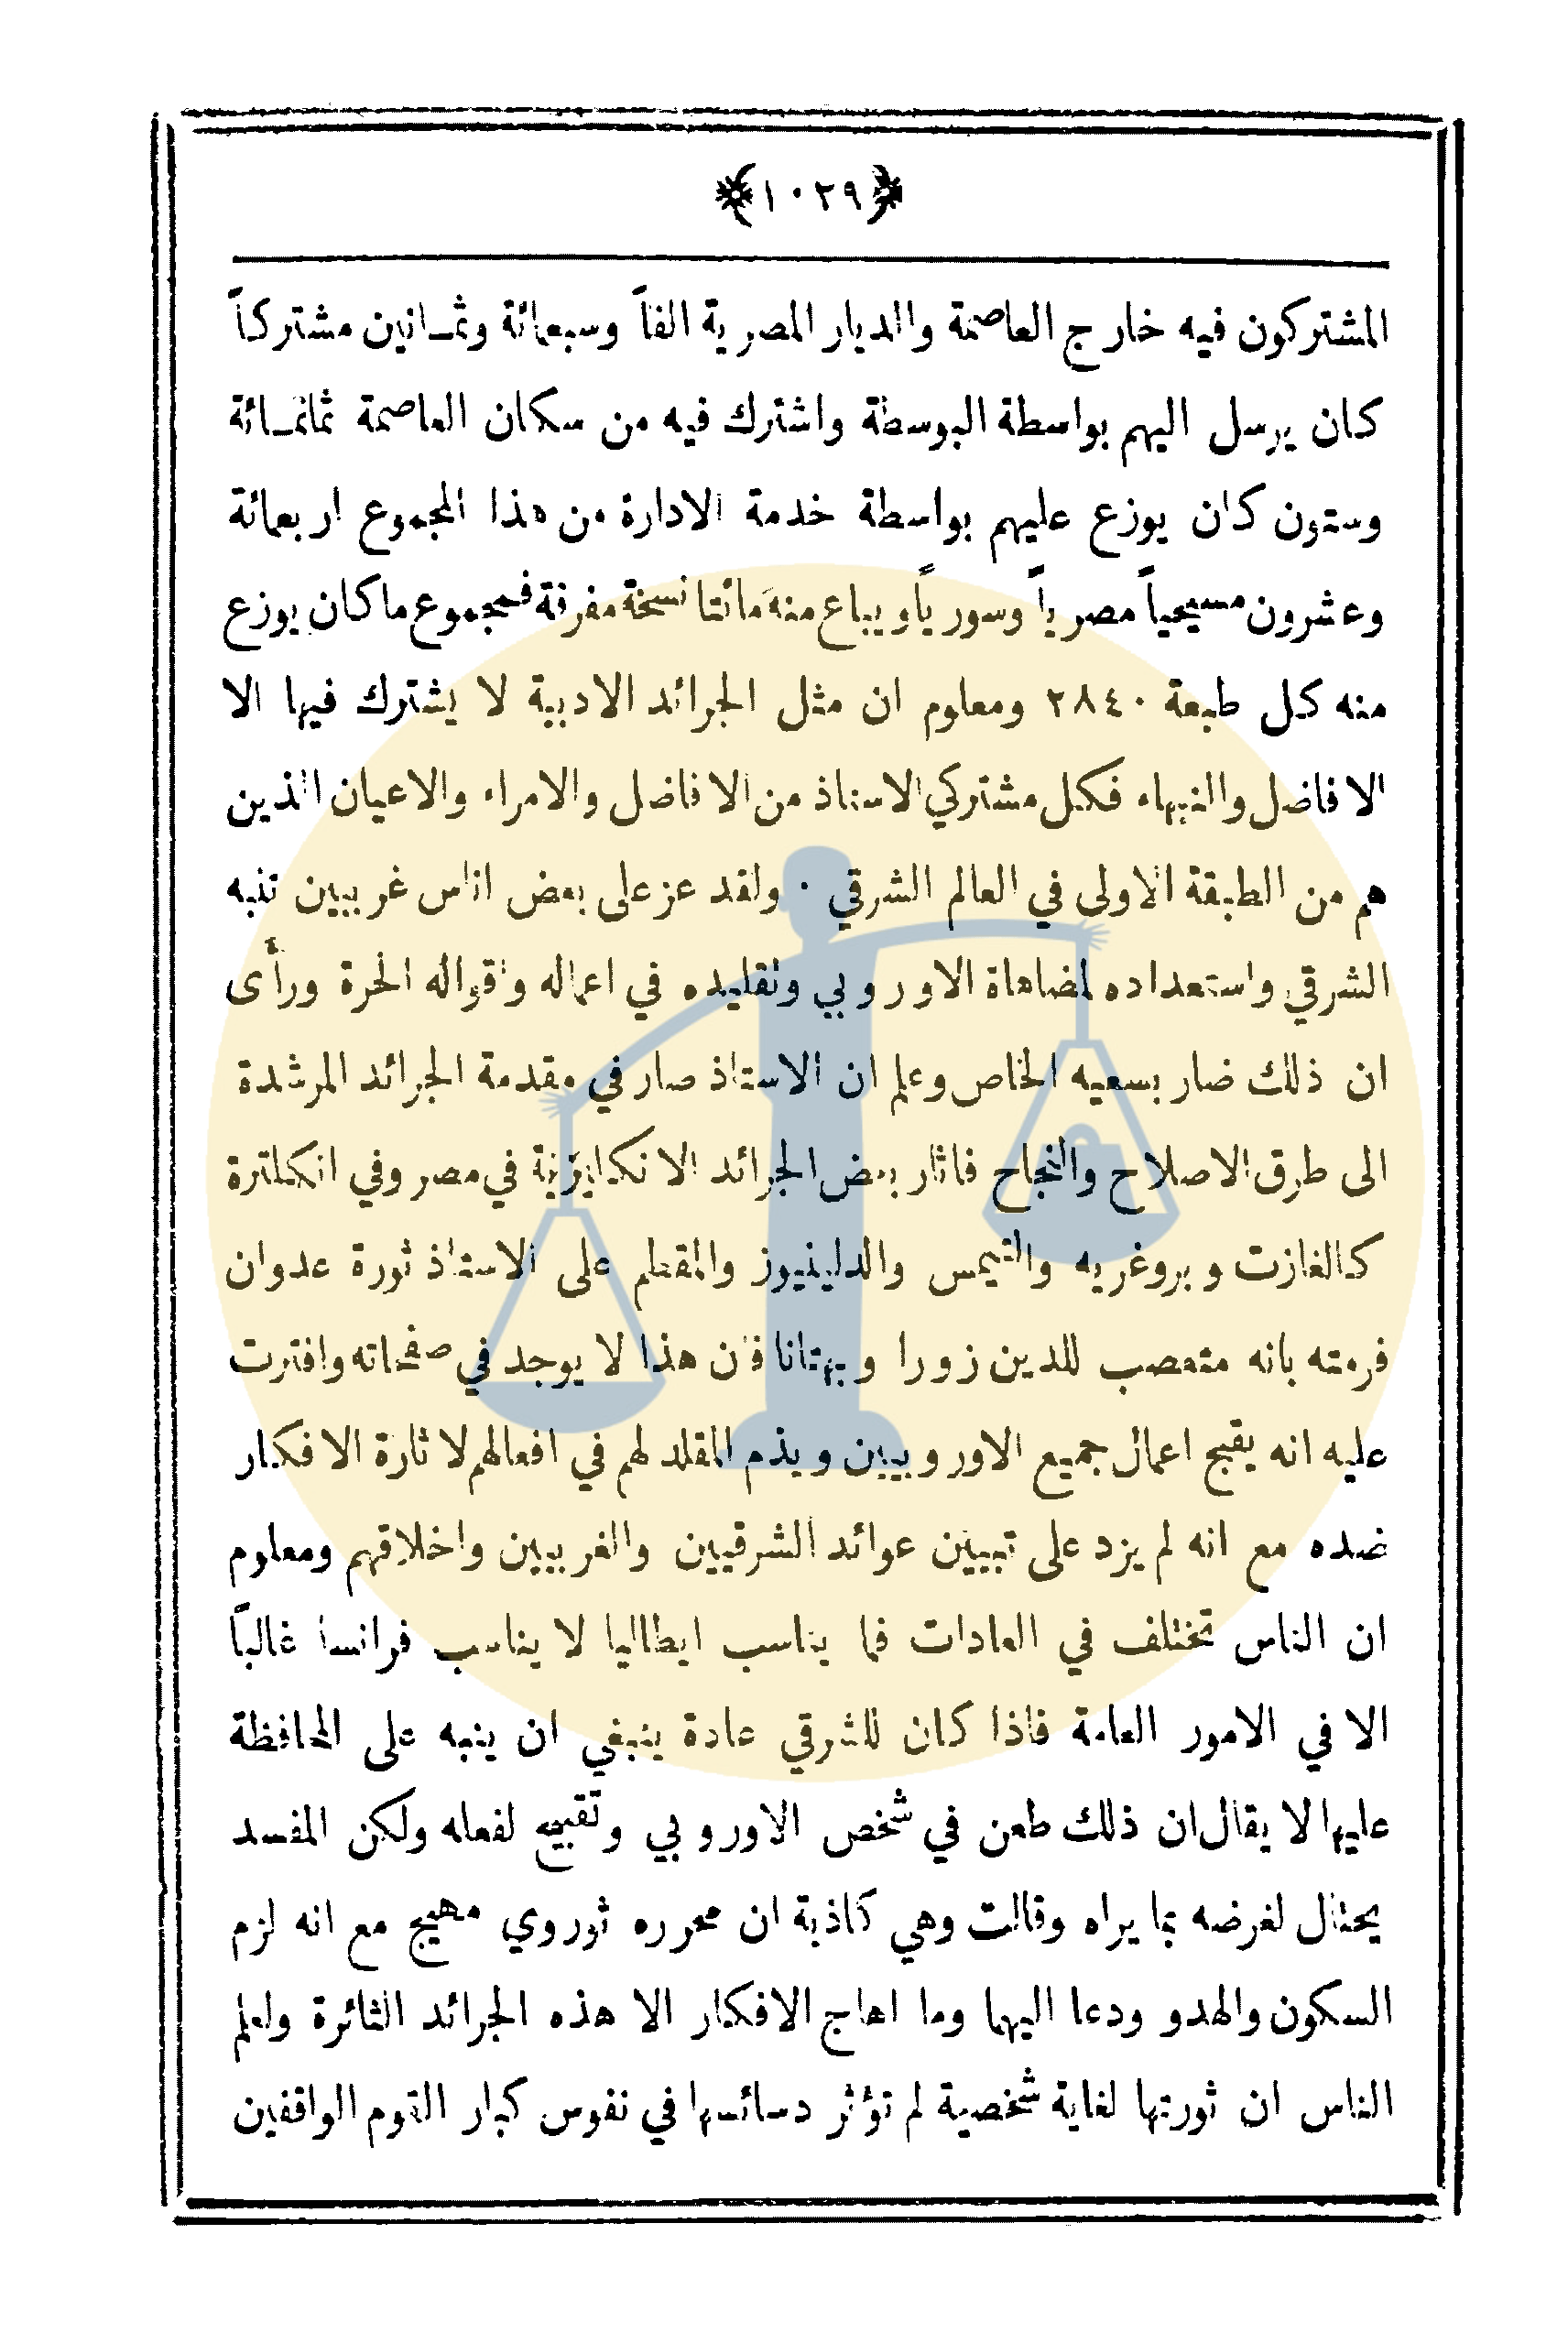 ص 2 من آخر مقالات عبد الله النديم